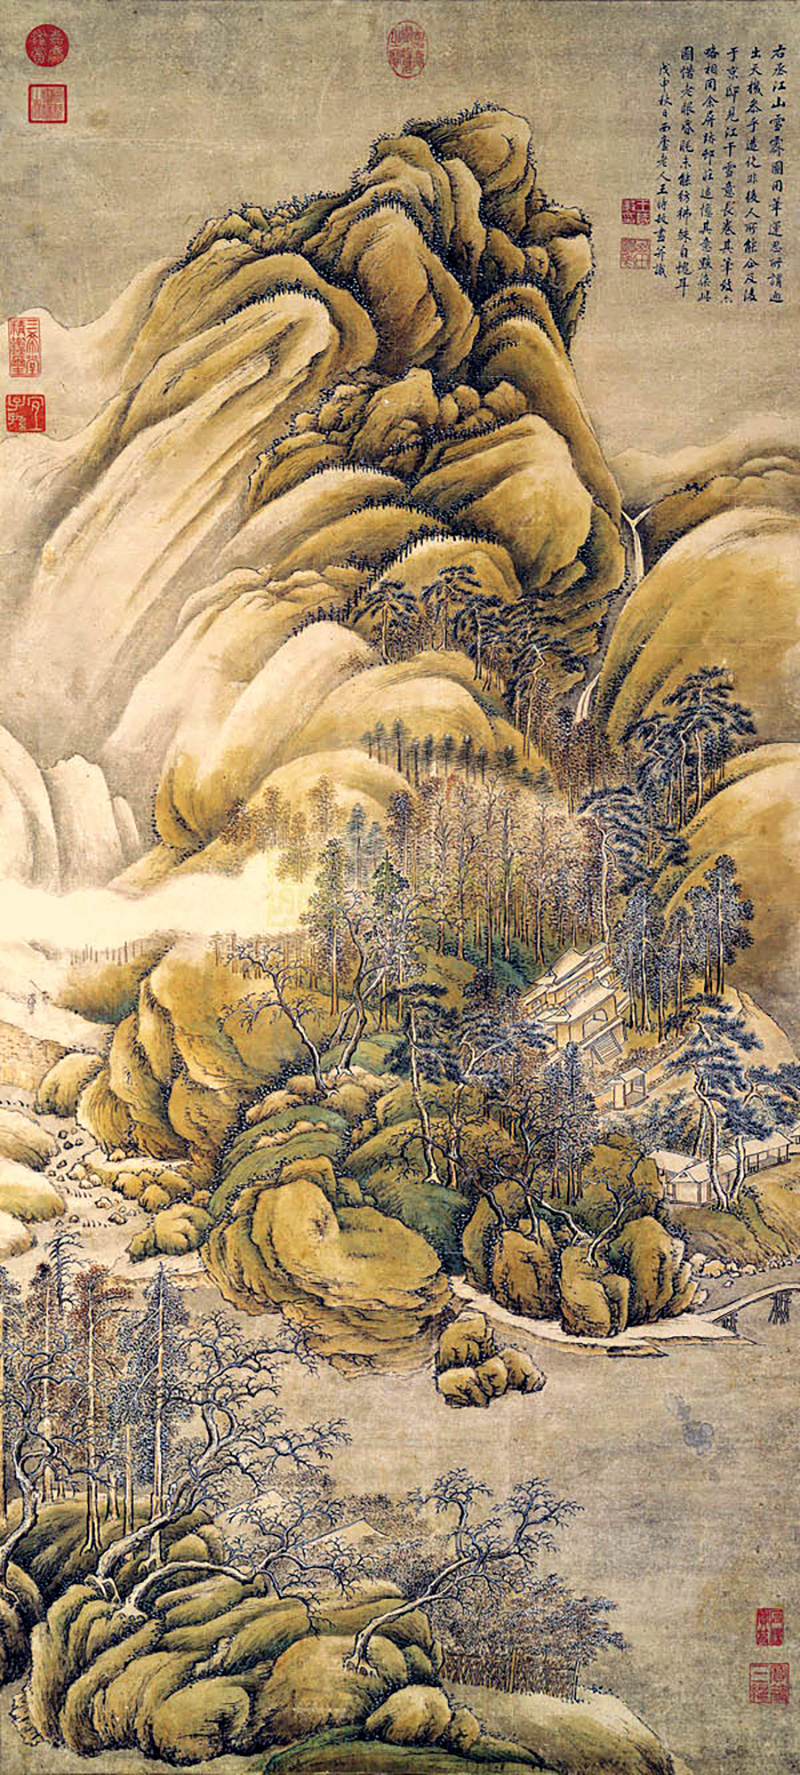 Wang Shimin: "Después de 'Nieve sobre ríos y montañas' de Wang Wei". Dinastía Qing. Foto: Wikipedia.